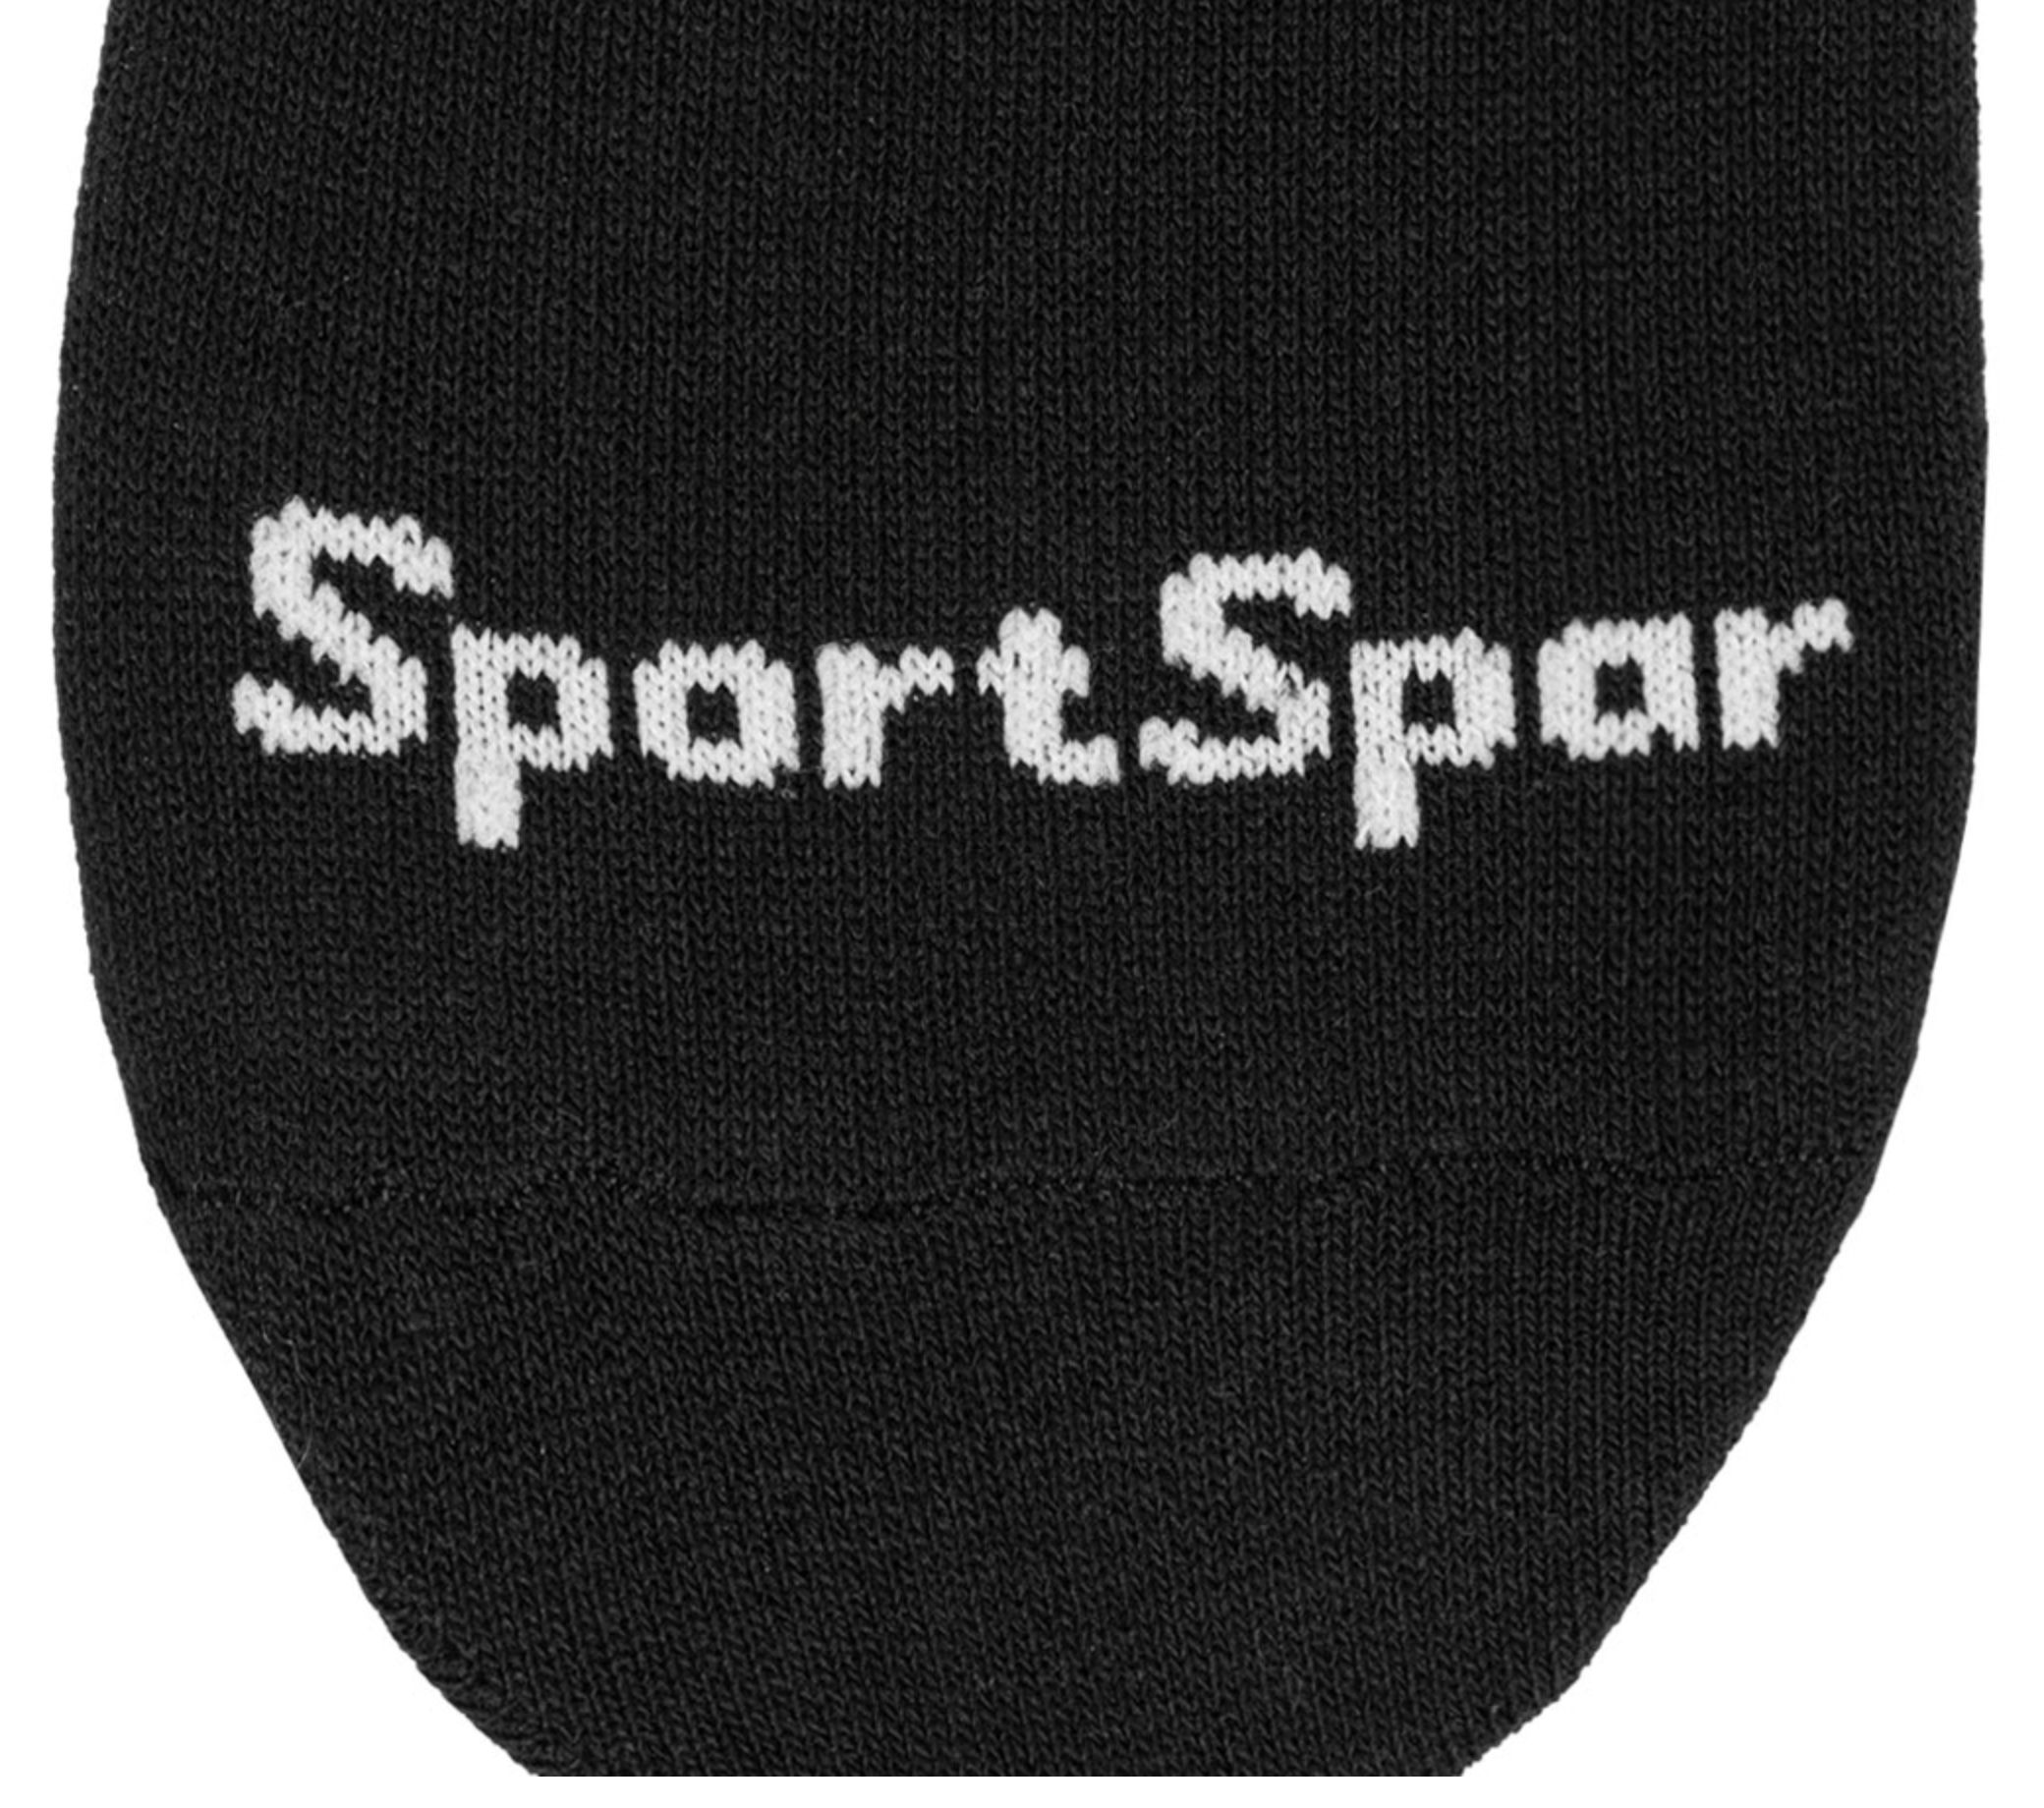 3 Paar SportSpar Sparlinge Füßlinge Sneaker Socken für 1,19€ + VSK